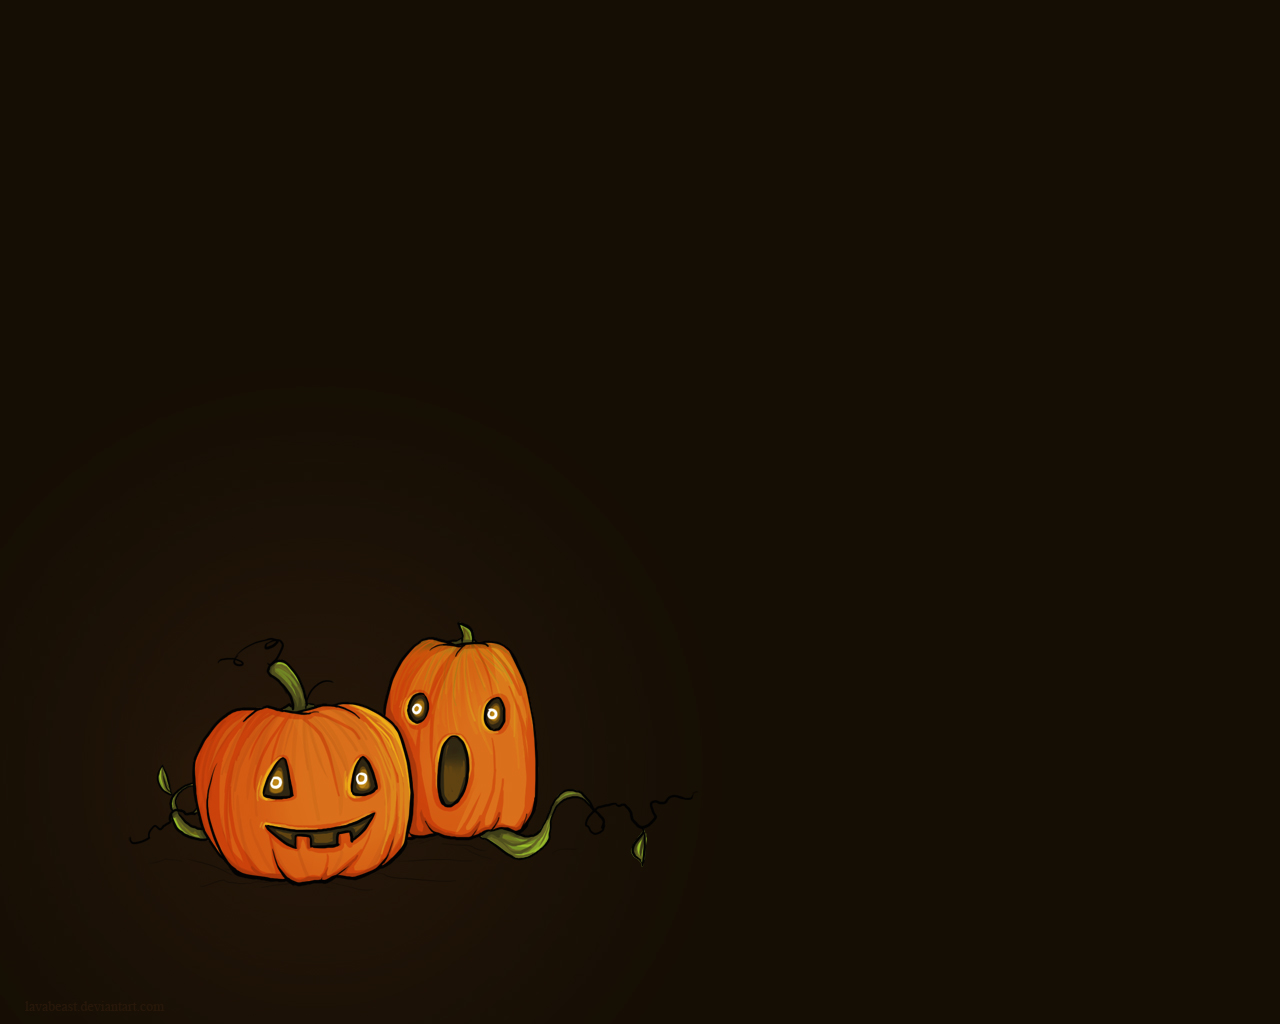 Cute Halloween iPhone Wallpaper - WallpaperSafari